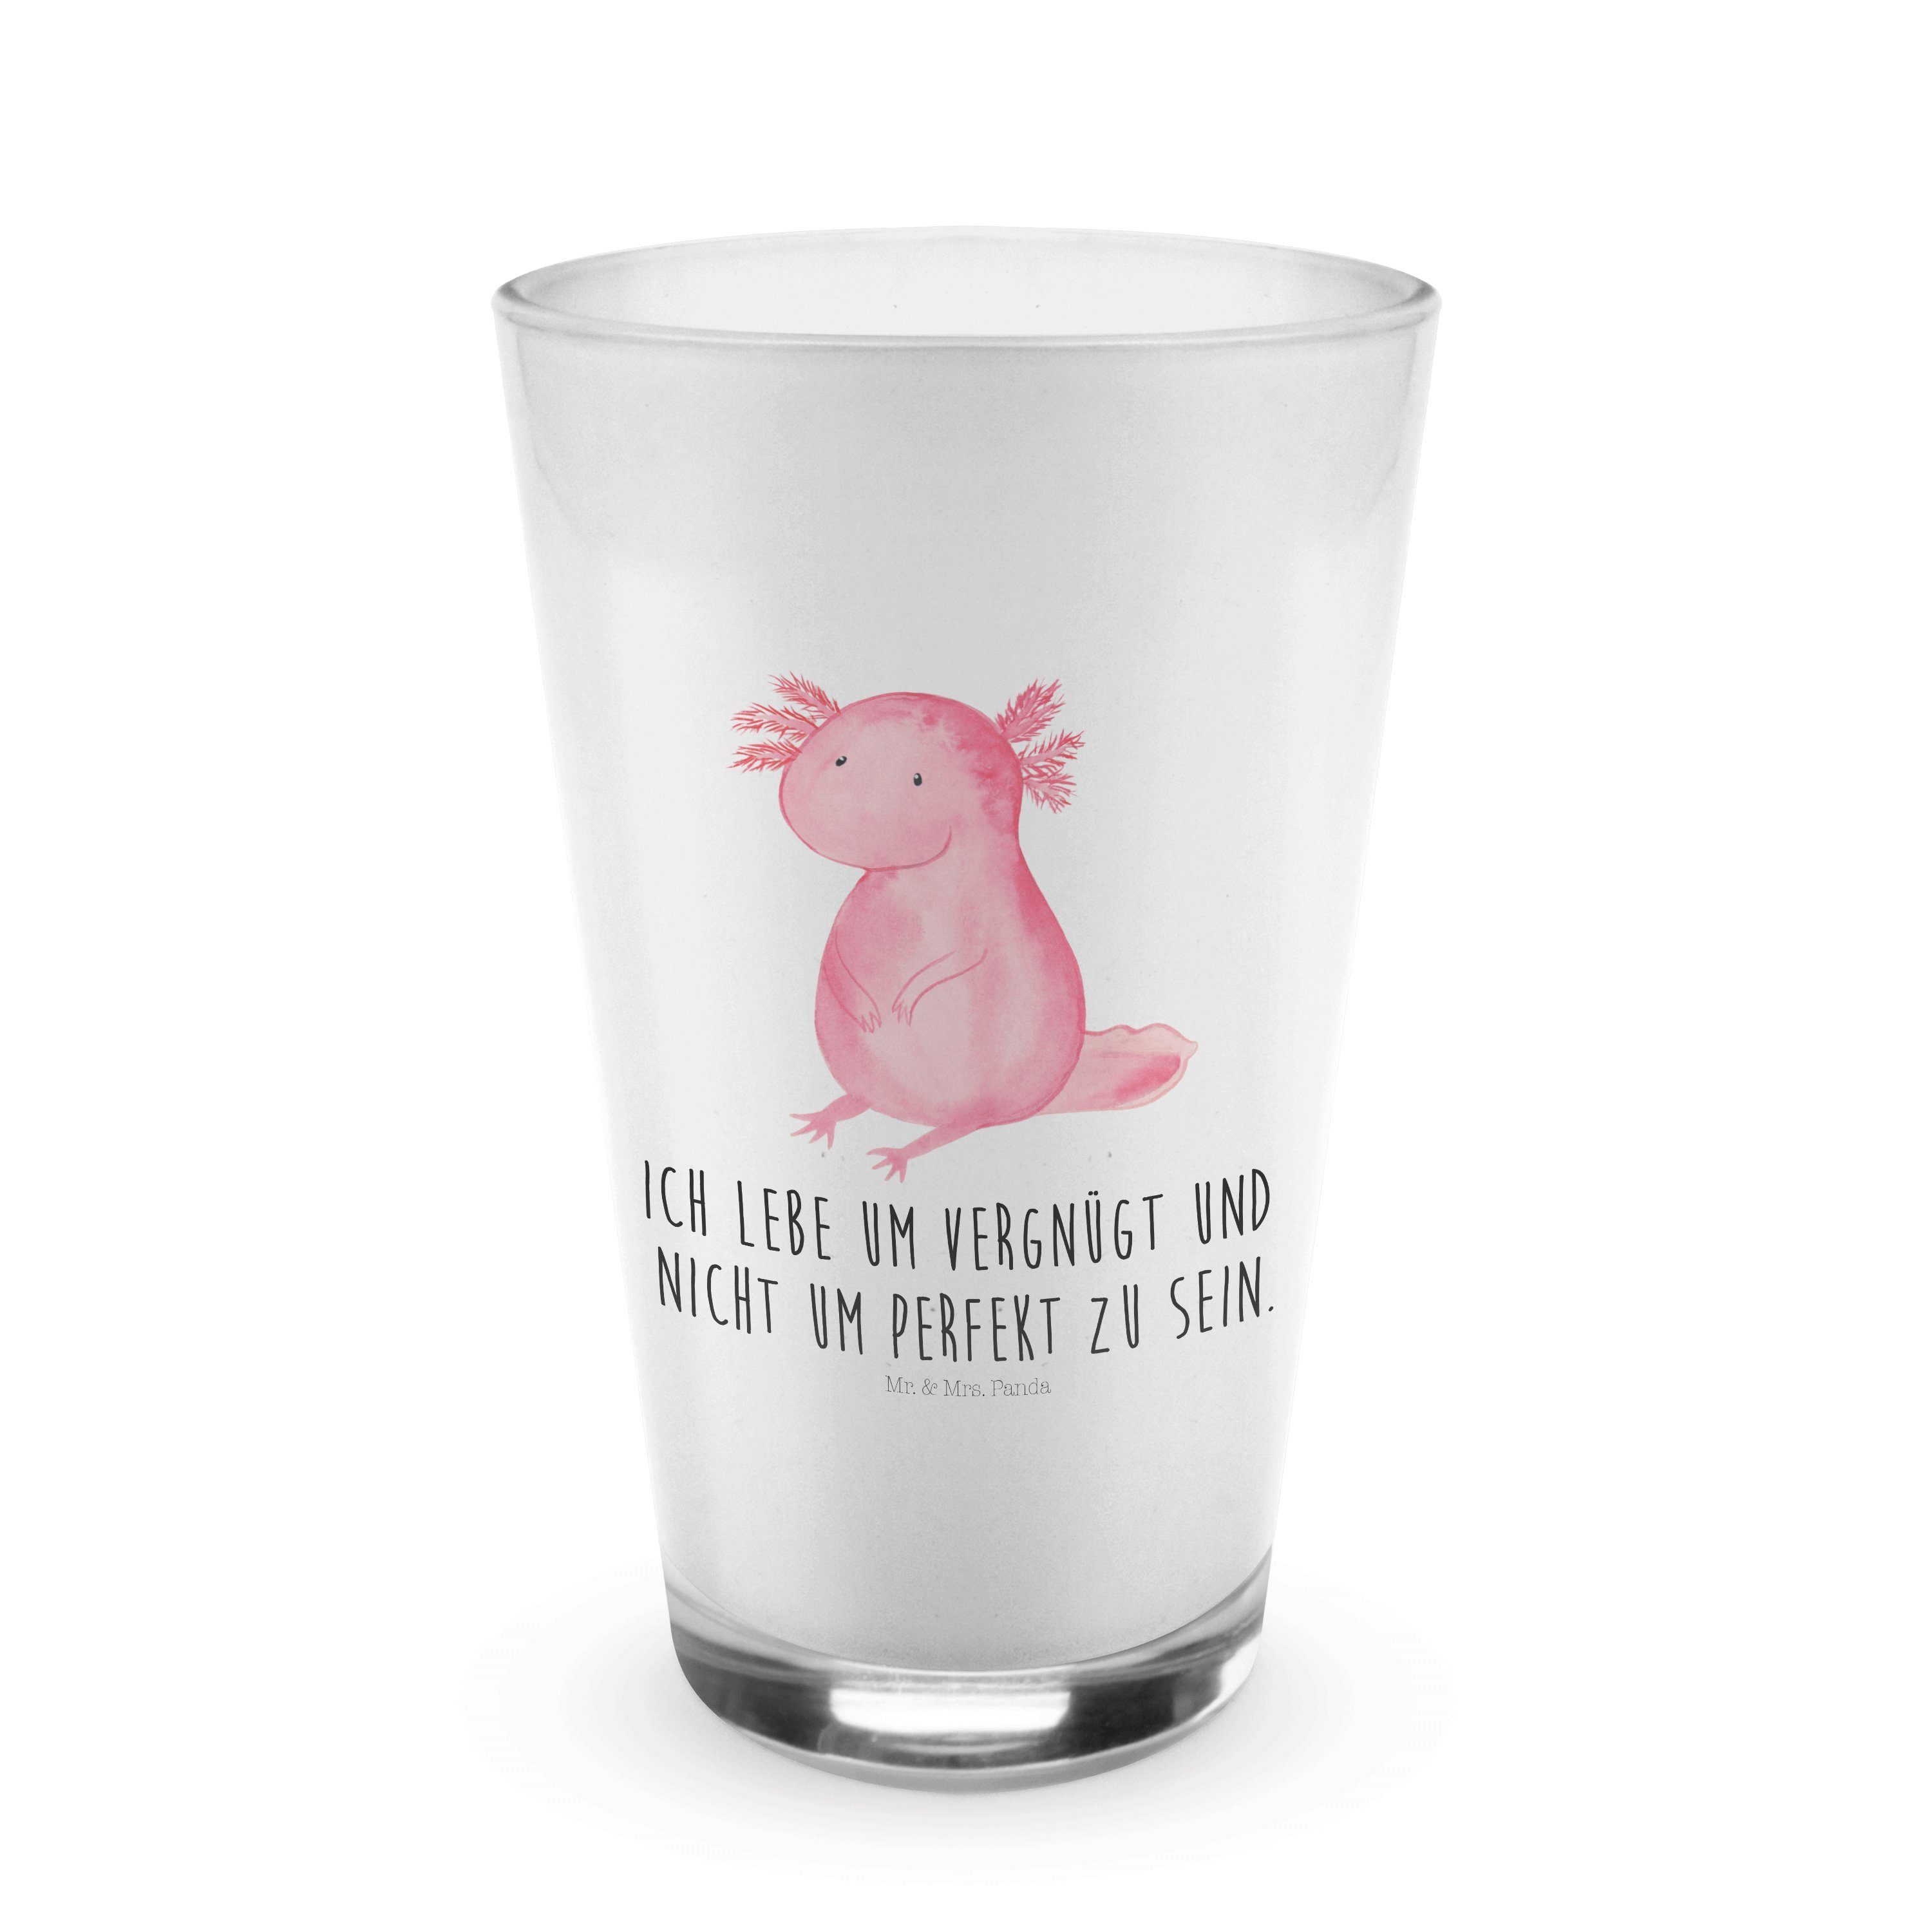 Mr. & Mrs. Panda Glas Axolotl - Transparent - Geschenk, Glas, zufrieden, Cappuccino Glas, M, Premium Glas